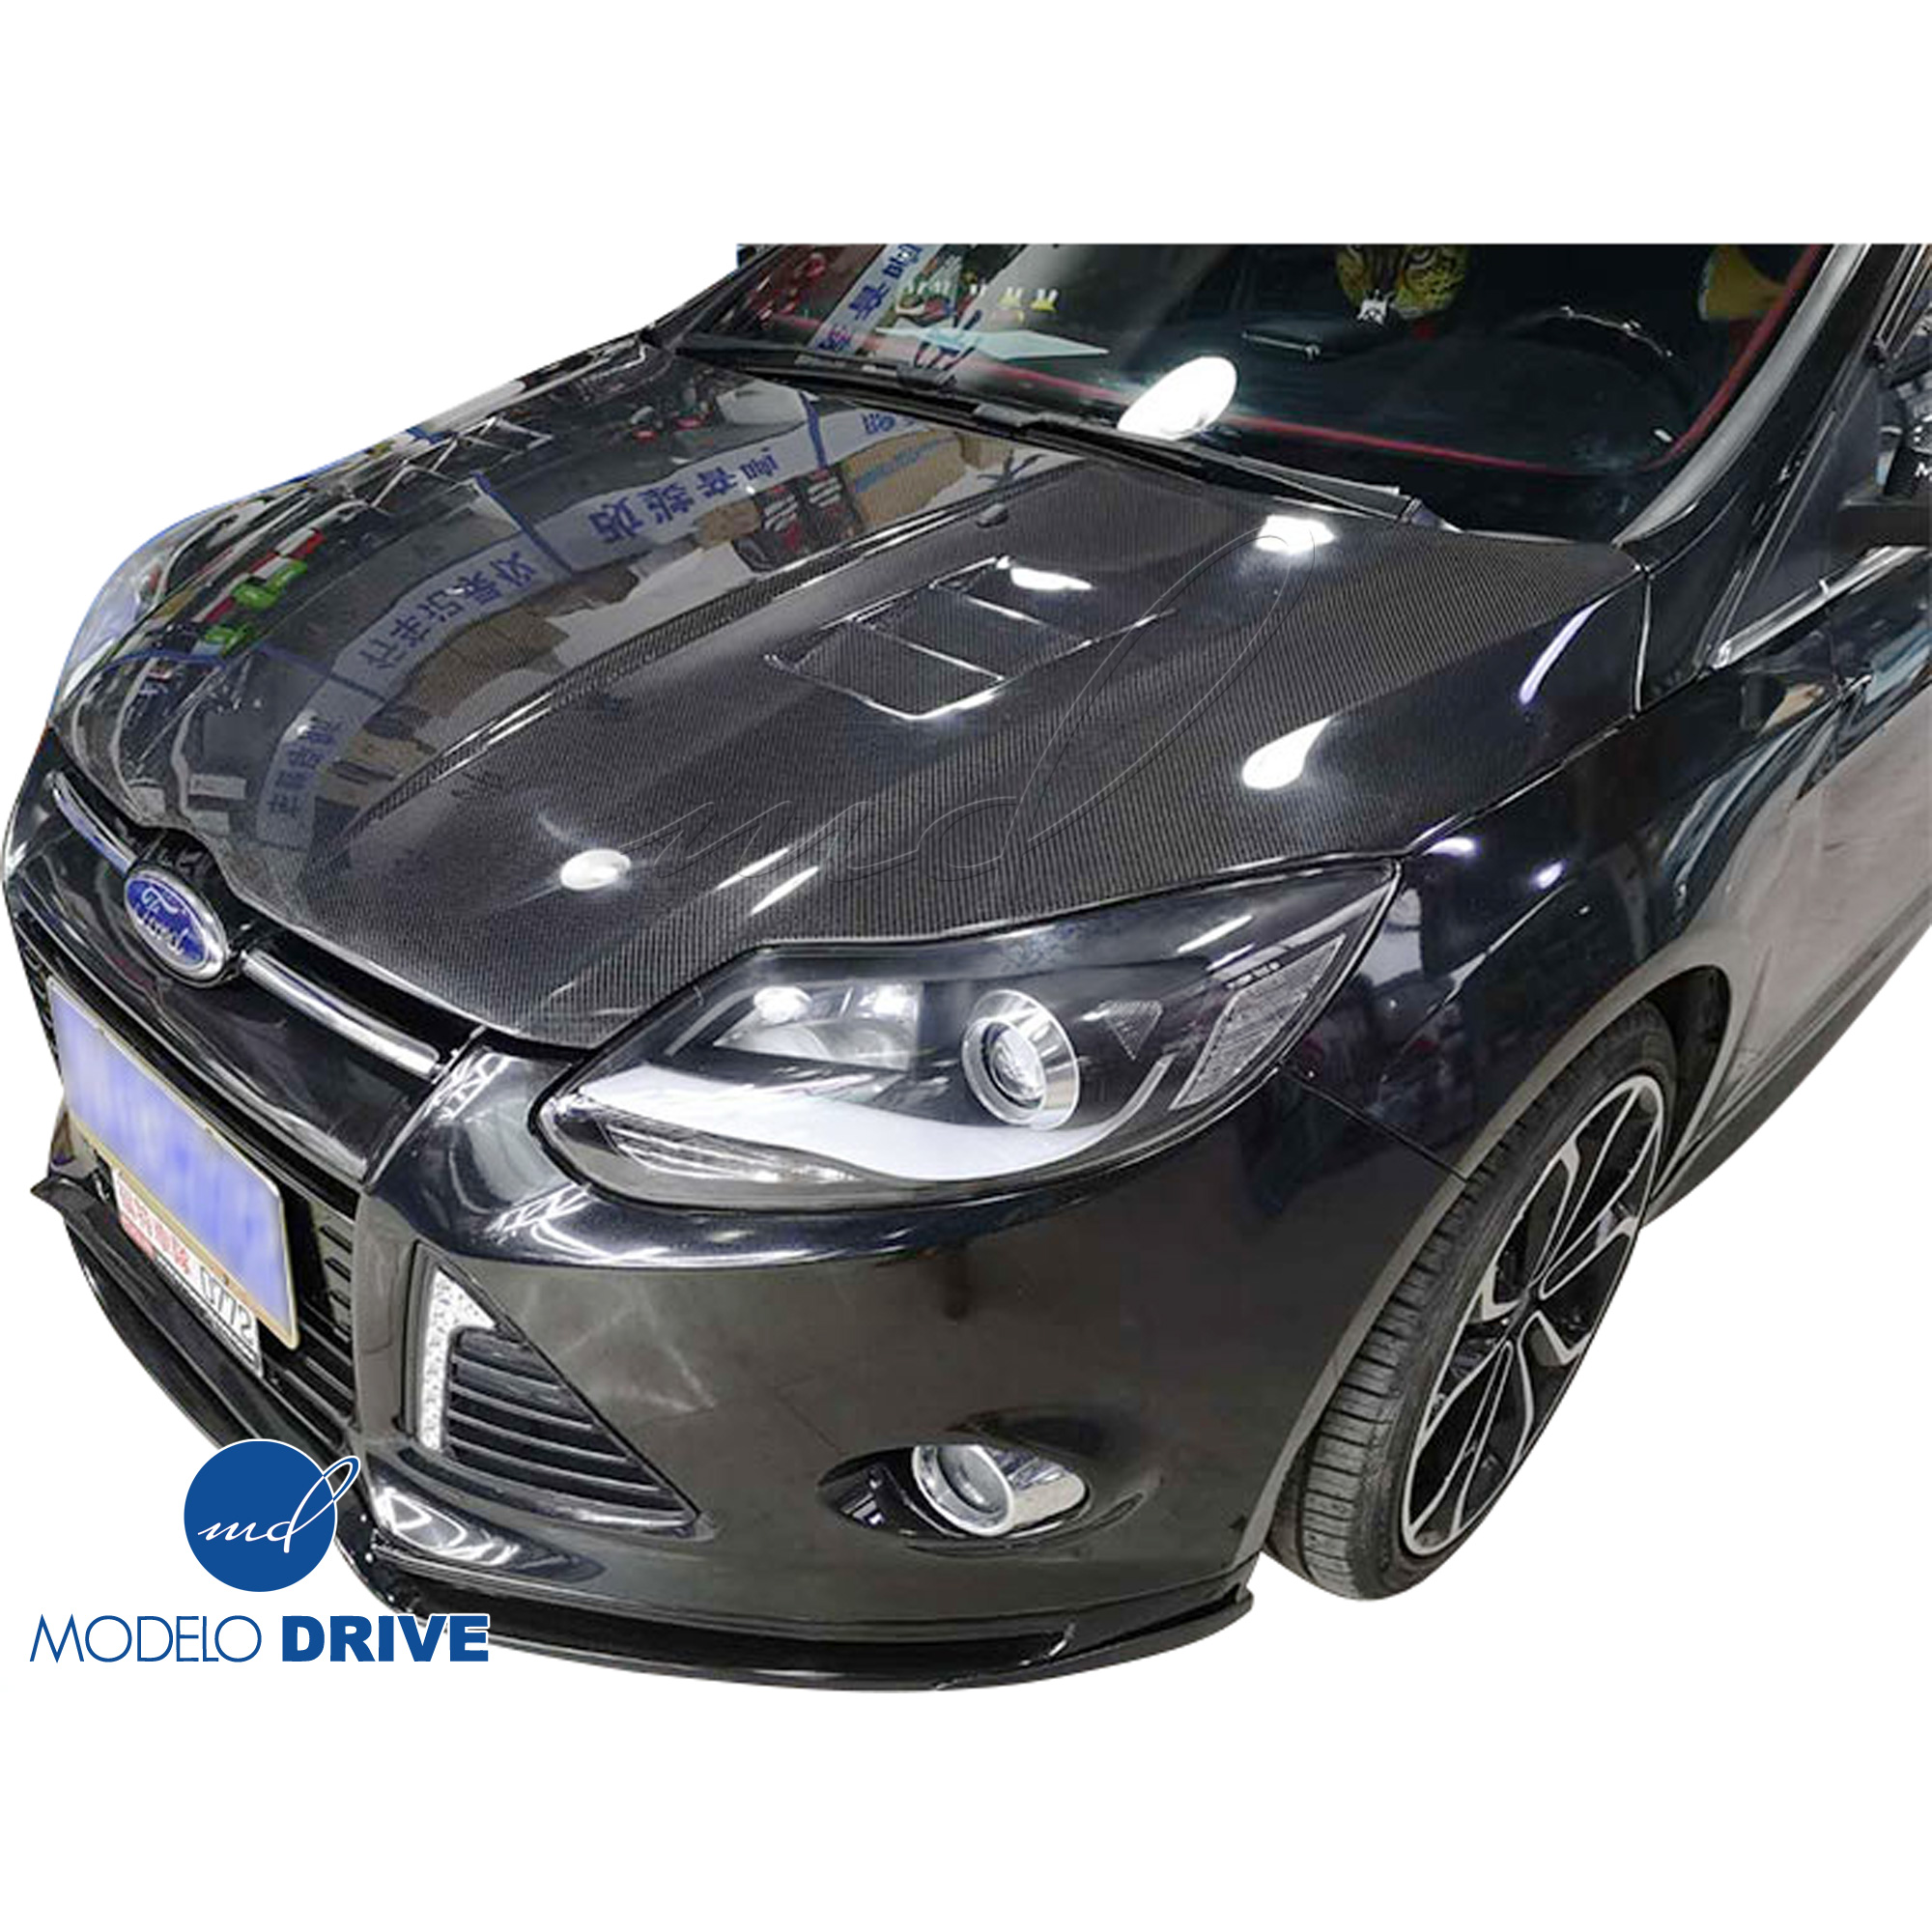 ModeloDrive Carbon Fiber KR Vented Hood > Ford Focus 2012-2014 - Image 2